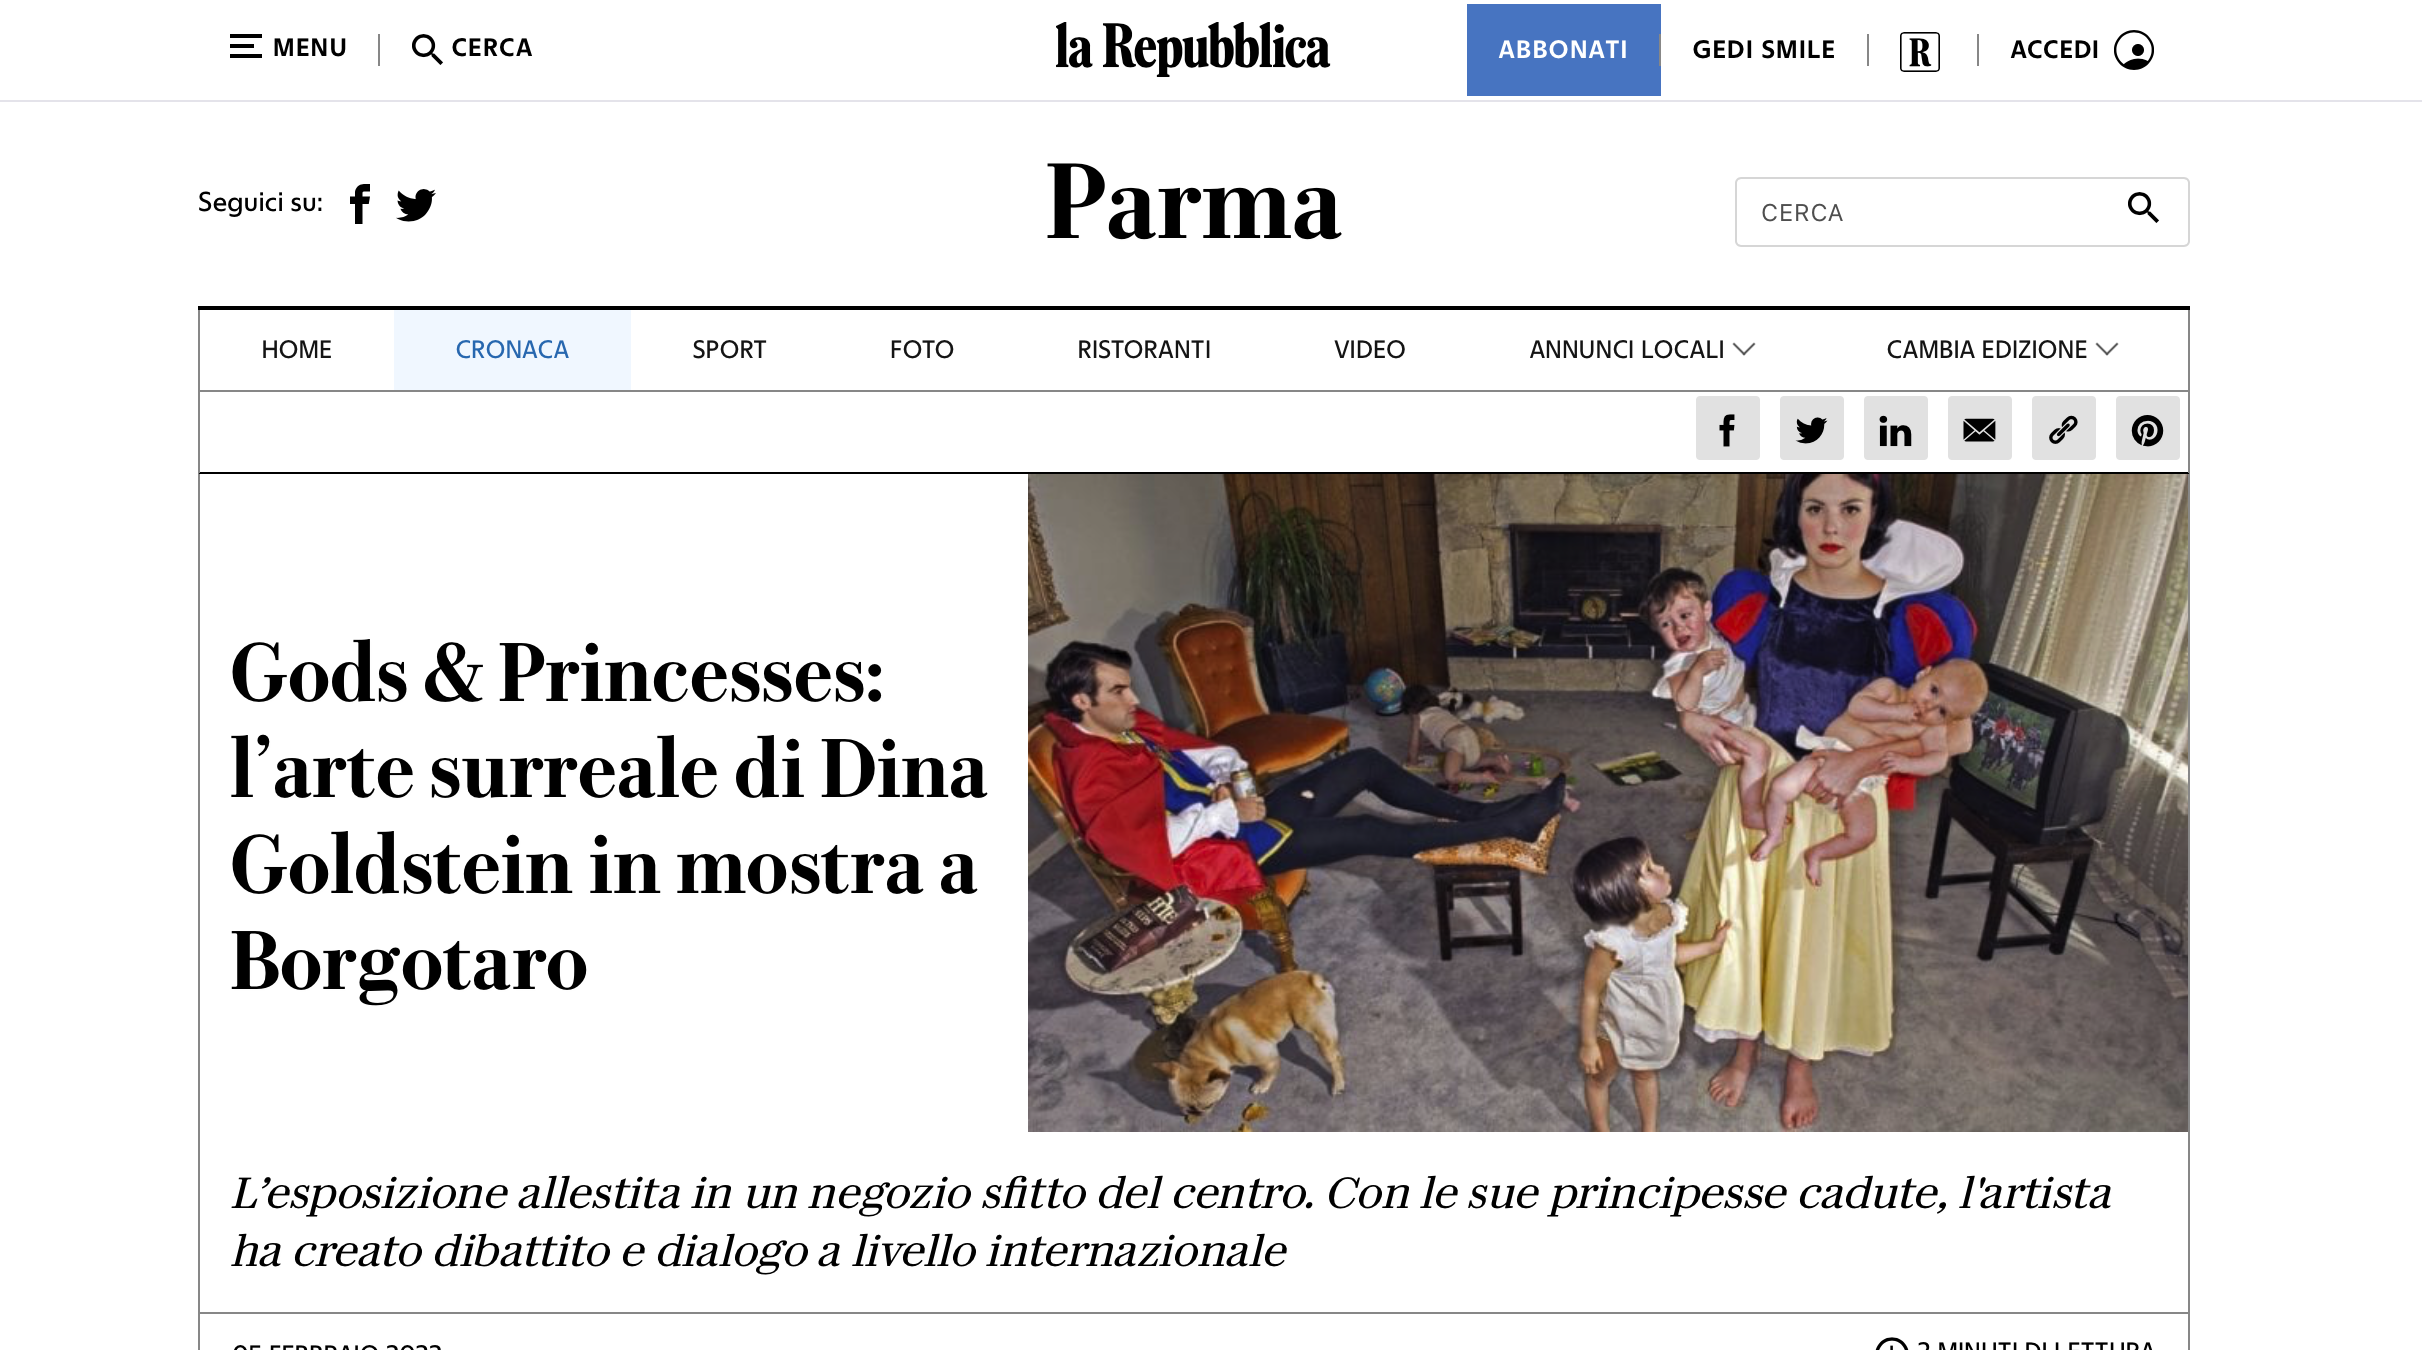 La Repubblica Dina Goldstein Fallen Princesses news paper article